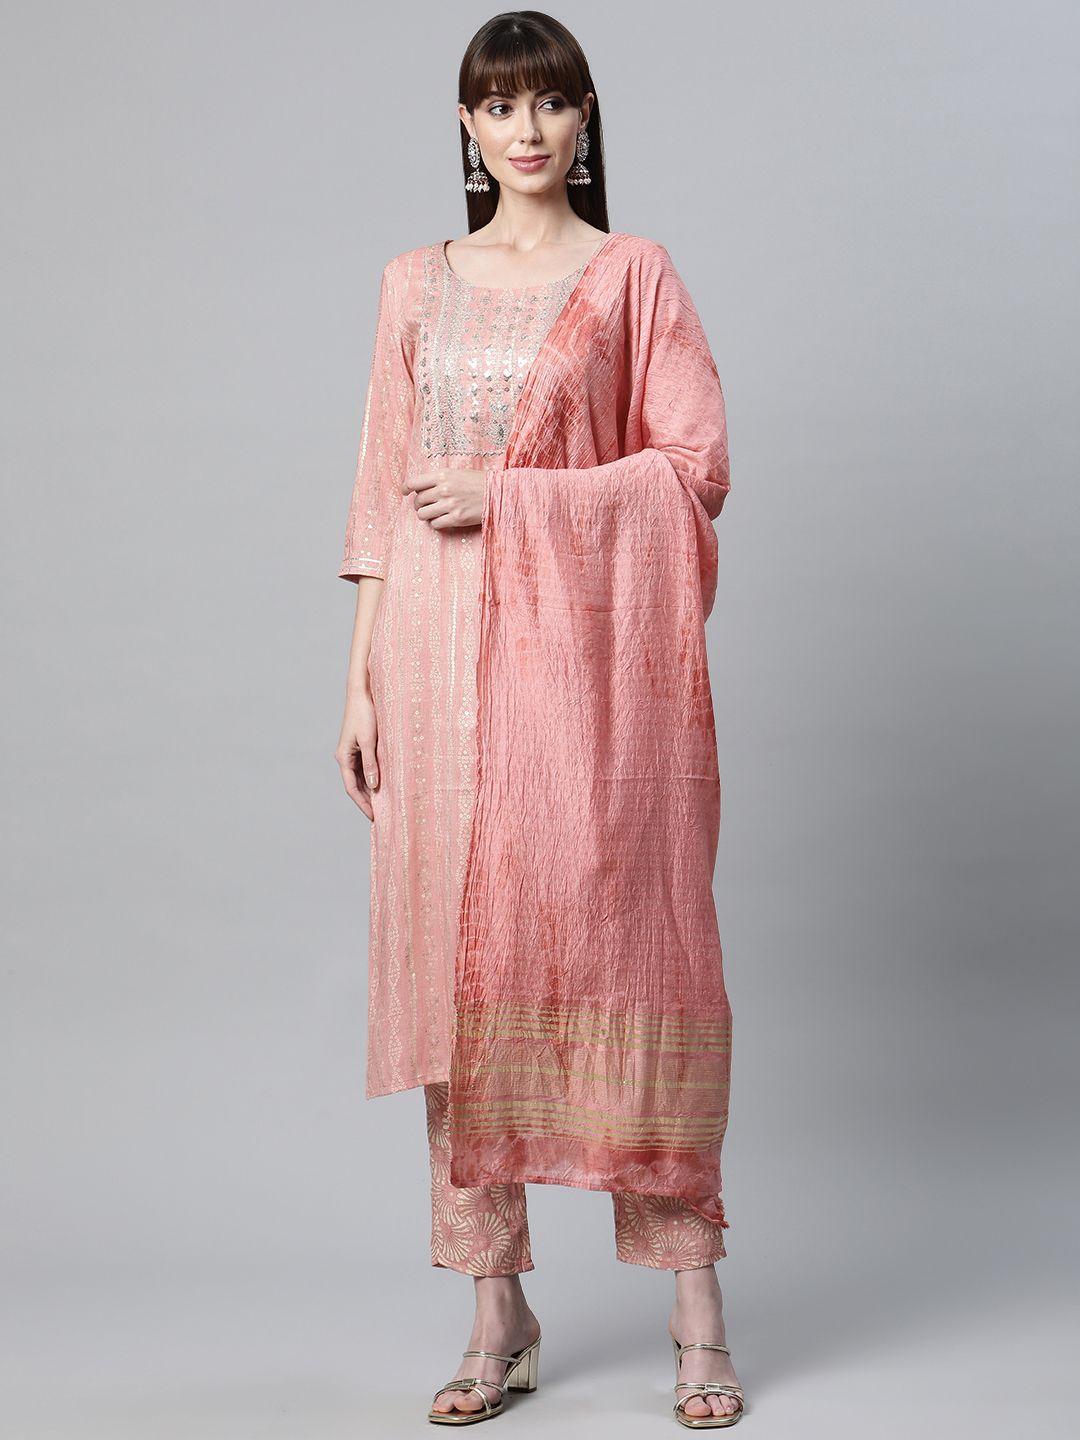 readiprint fashions women pink printed gotta patti kurta with palazzos & with dupatta